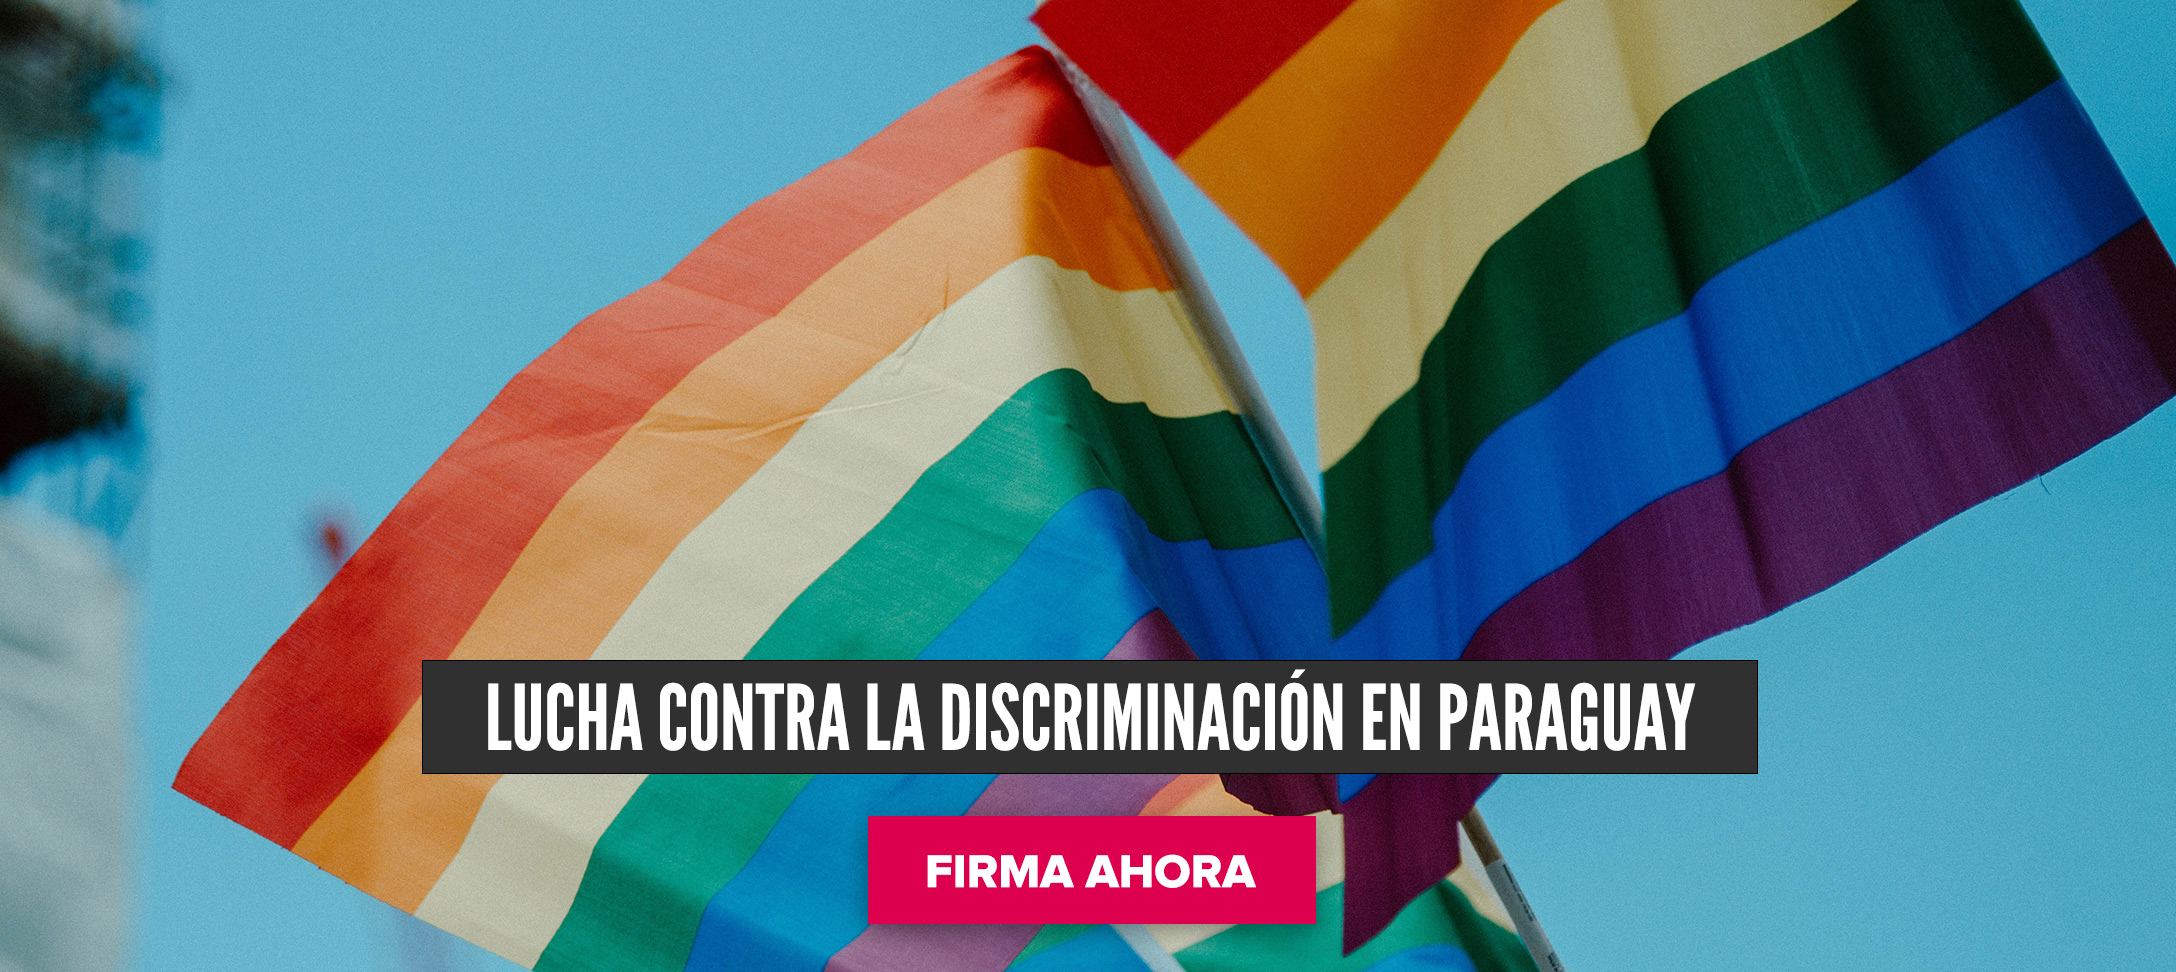 Lucha contra la discriminación en Paraguay